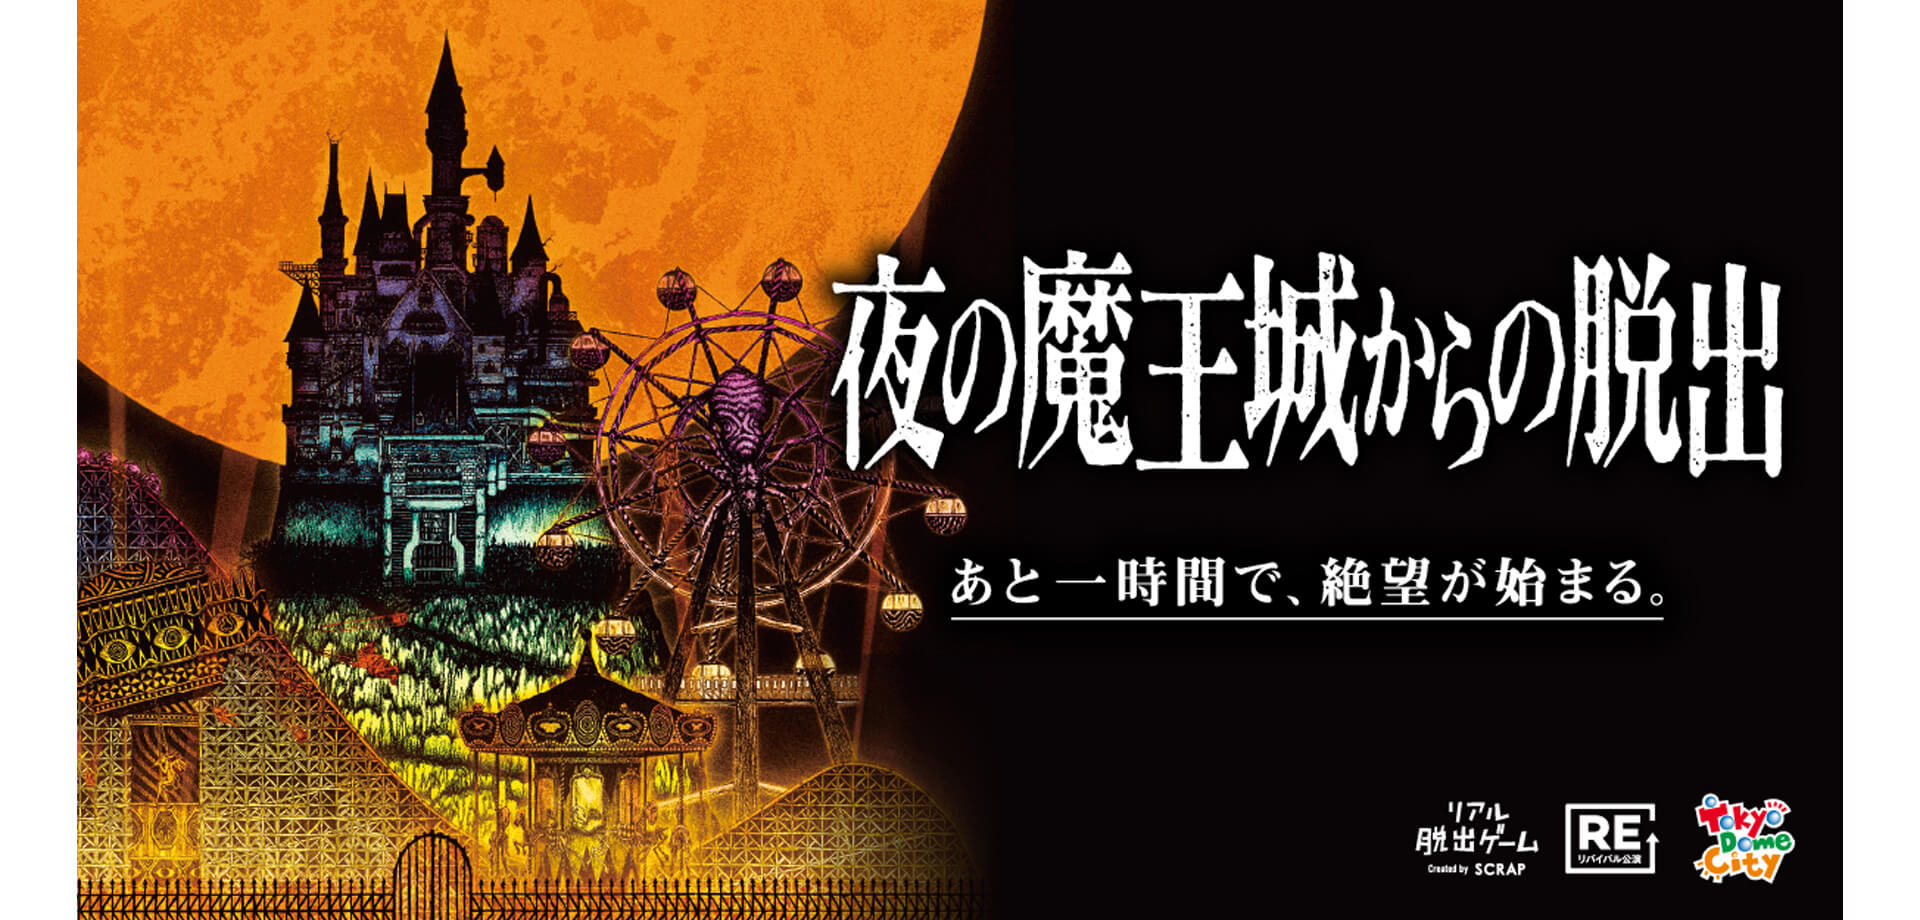 リアル脱出ゲーム『夜の魔王城からの脱出』 東京ドームシティ アトラクションズ